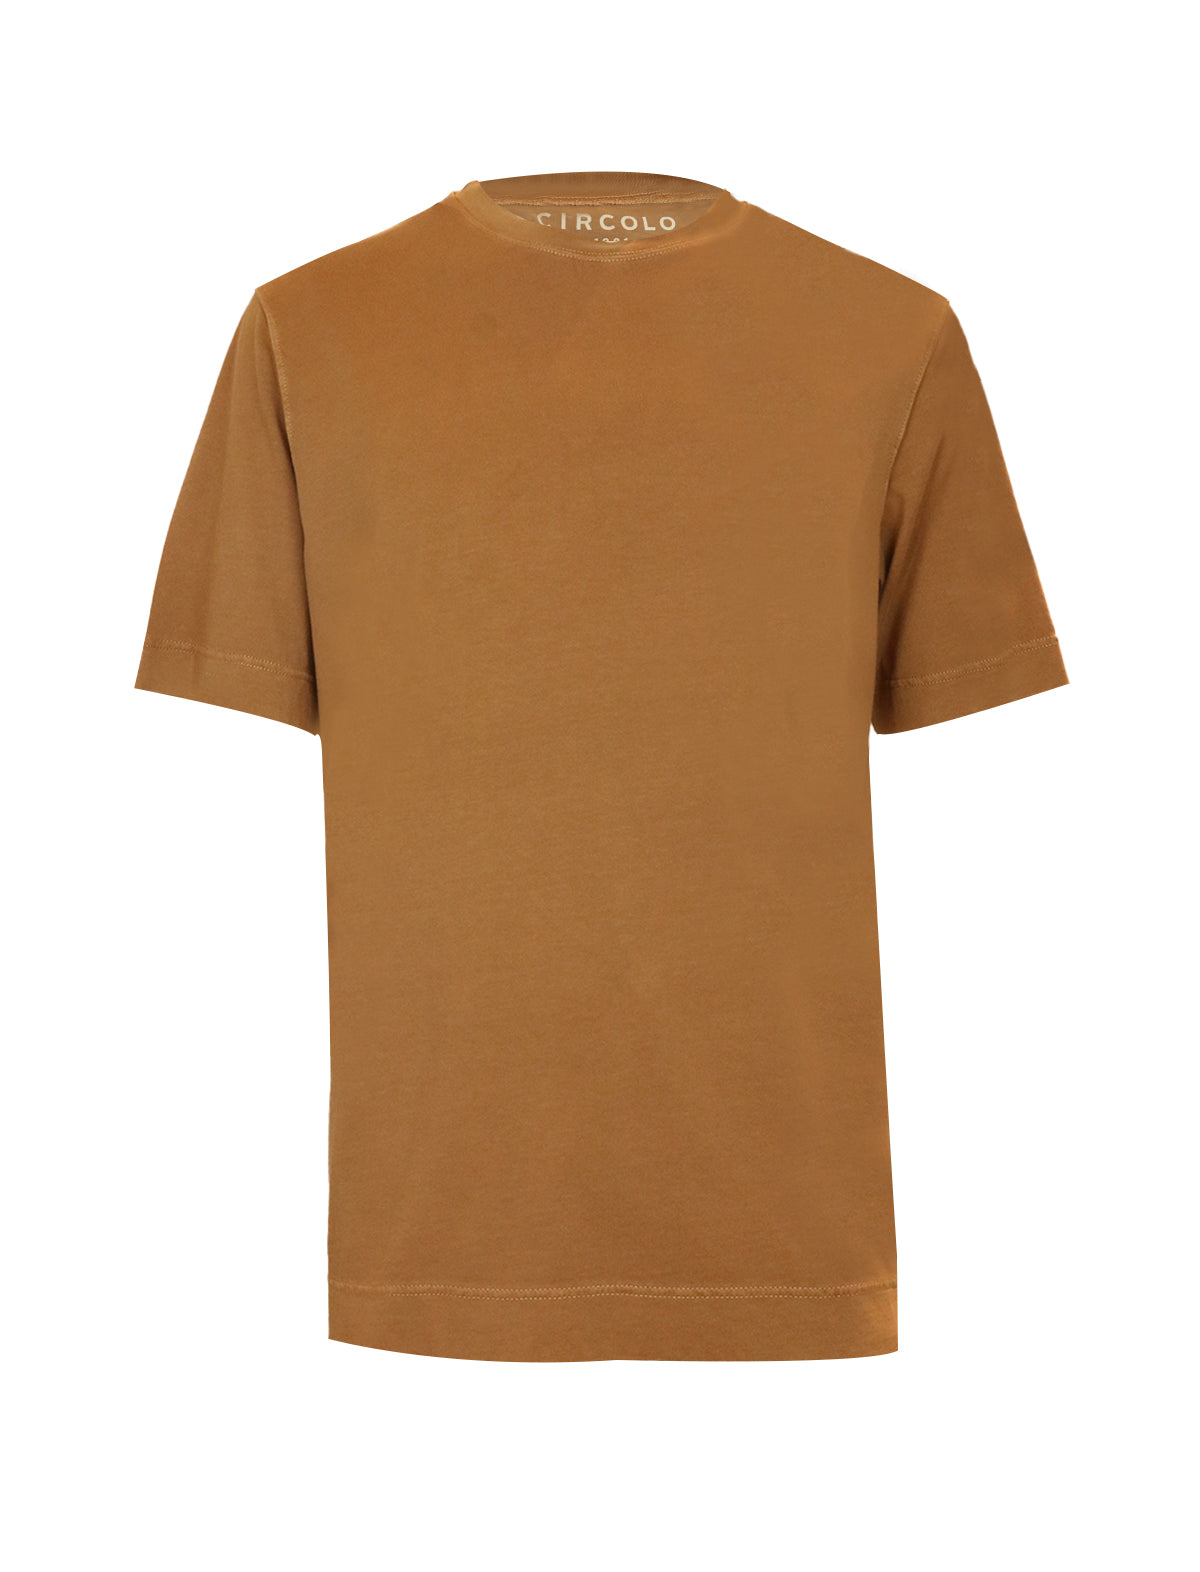 CIRCOLO 1901 Jersey T-Shirt in Cayenne